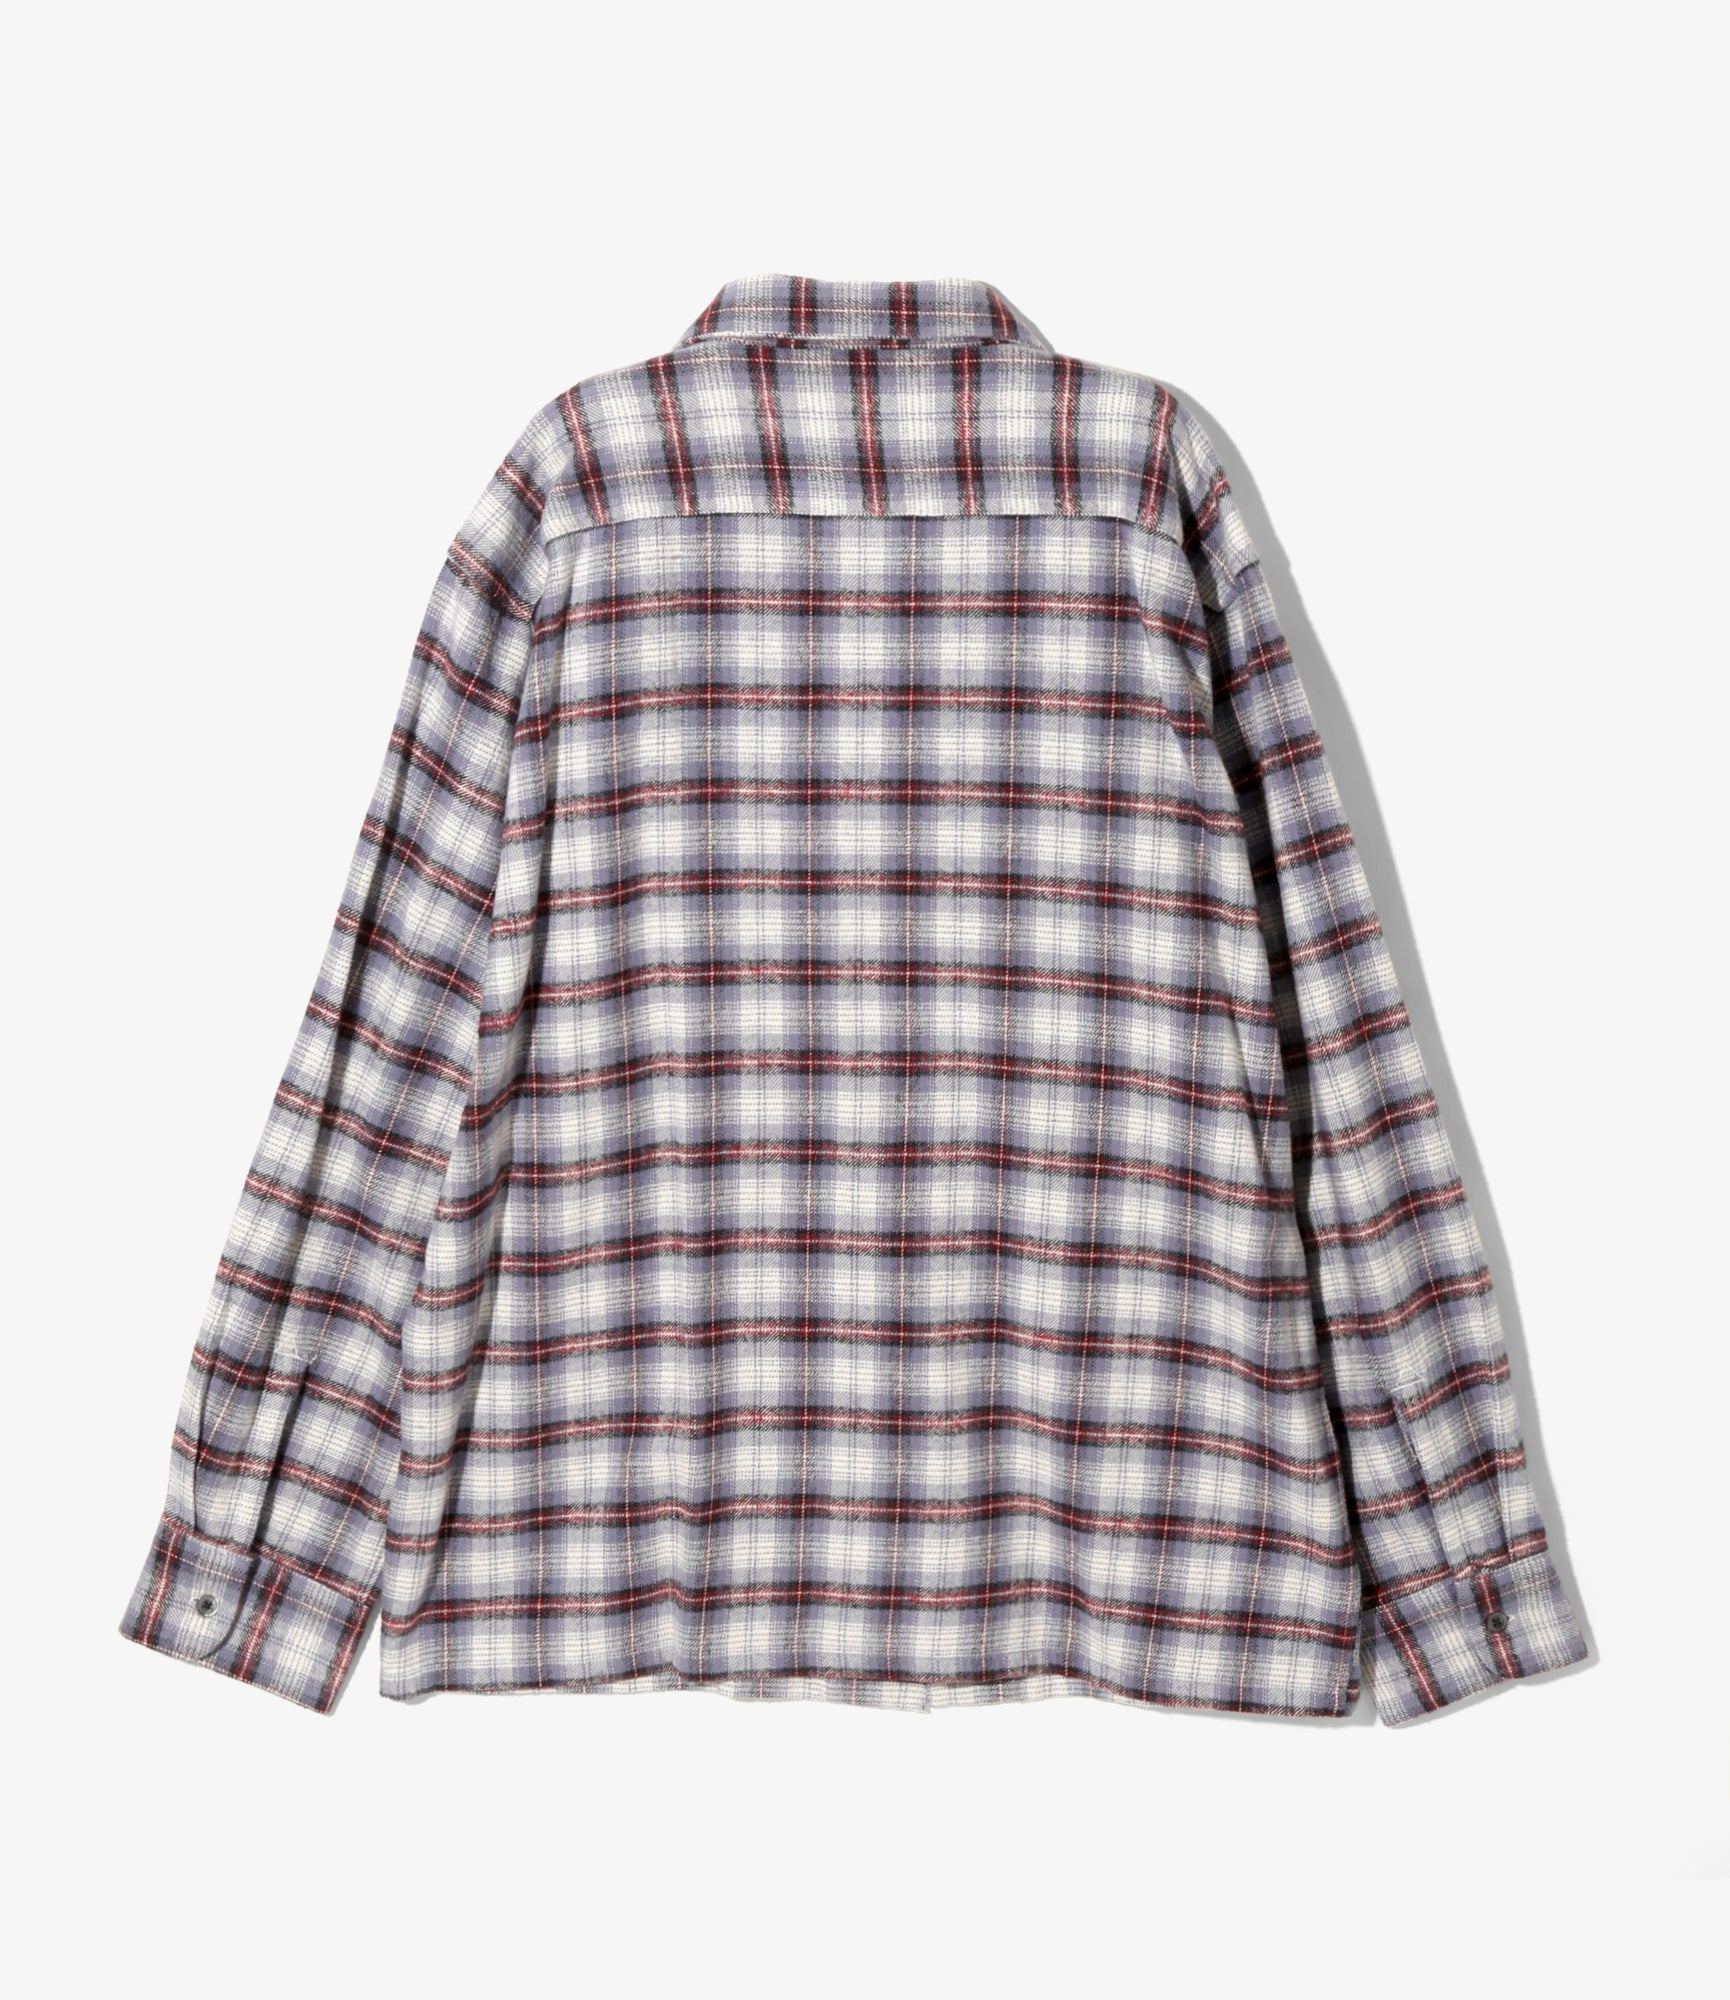 South2 West8 6 Pocket Shirt - Flannel Twill / Plaid - Lavender/Bordeaux